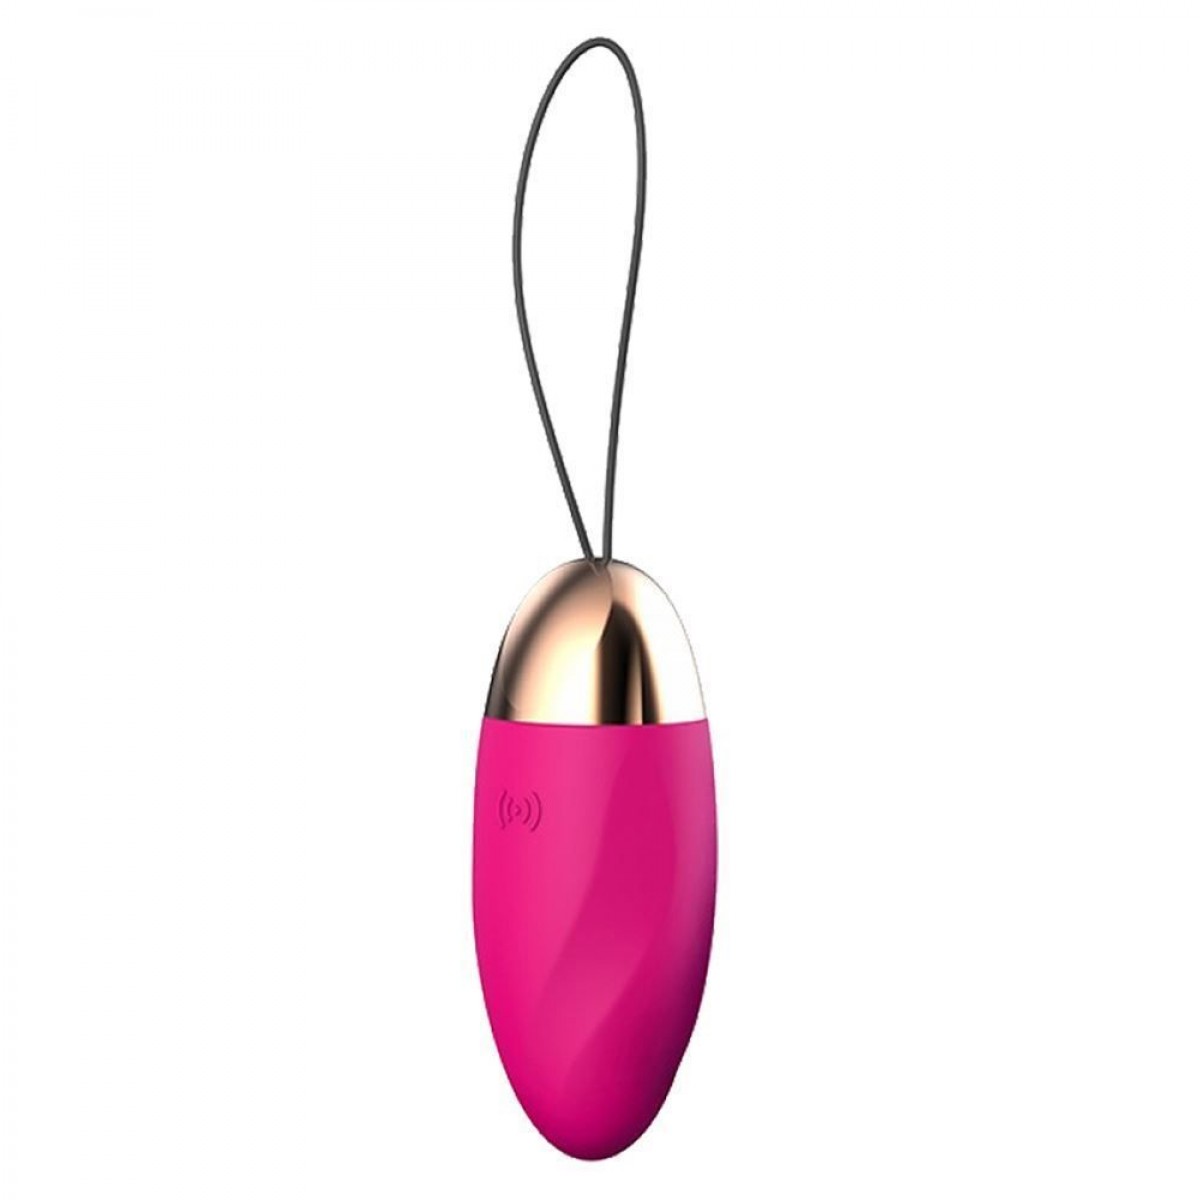 Vibrador Capsula Egg Spark Usb Aveludado 10 vibrações Pink